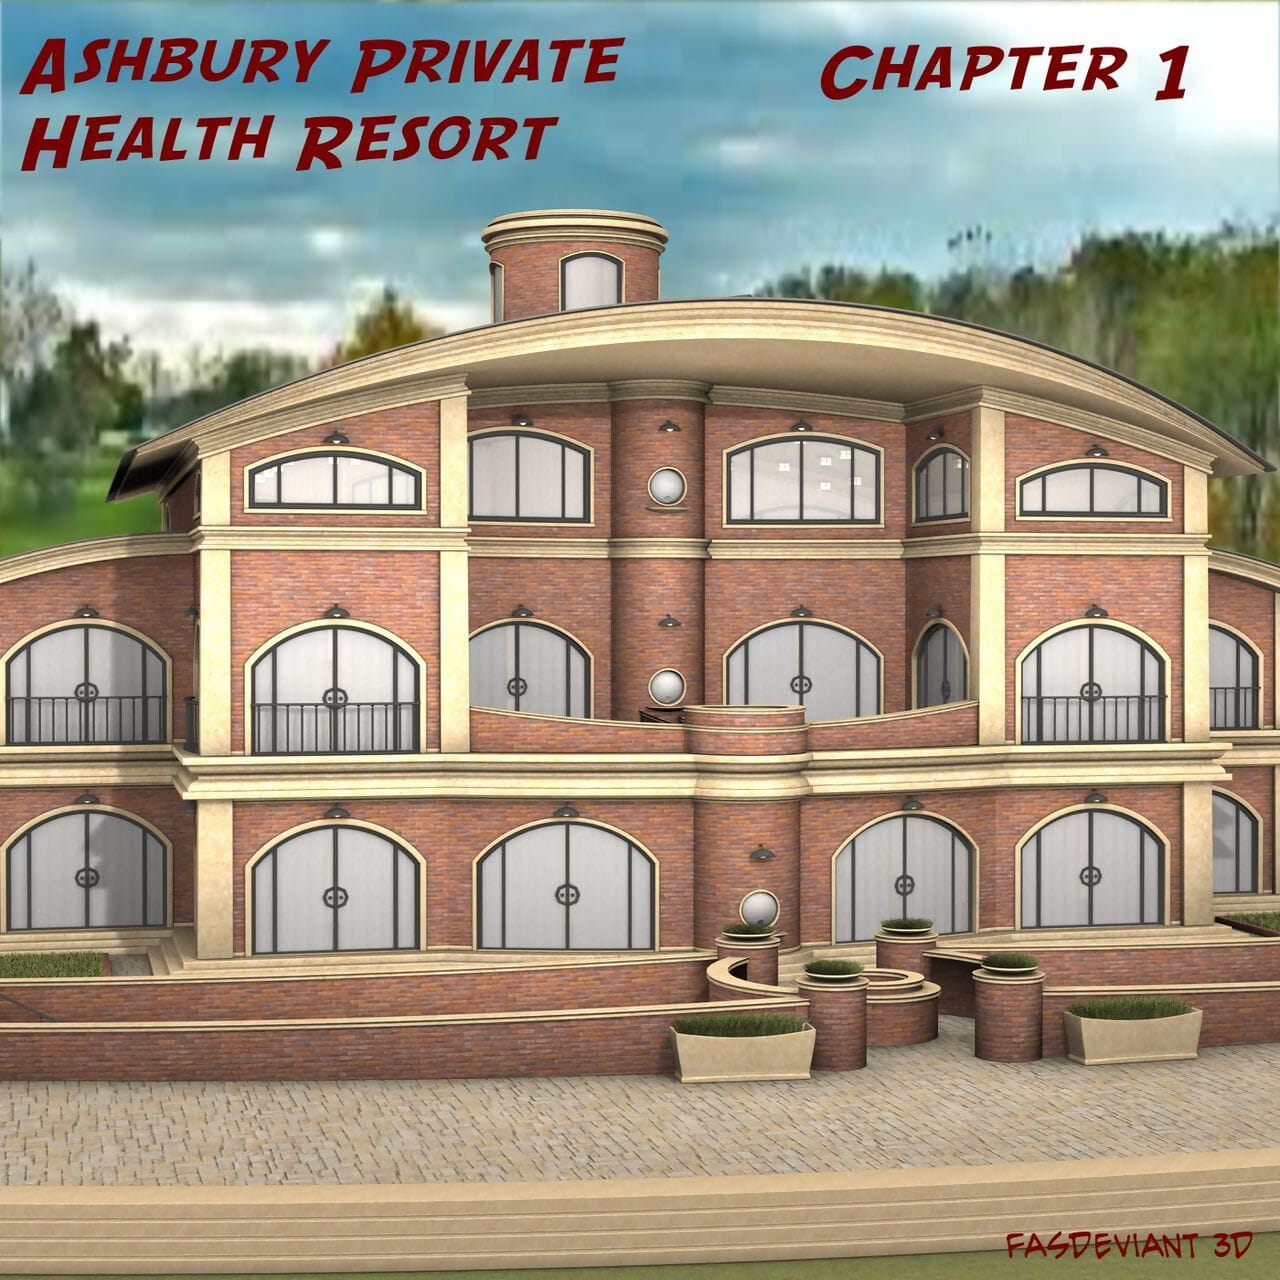 deviante ashbury Privato salute resort Capitolo 1 page 1